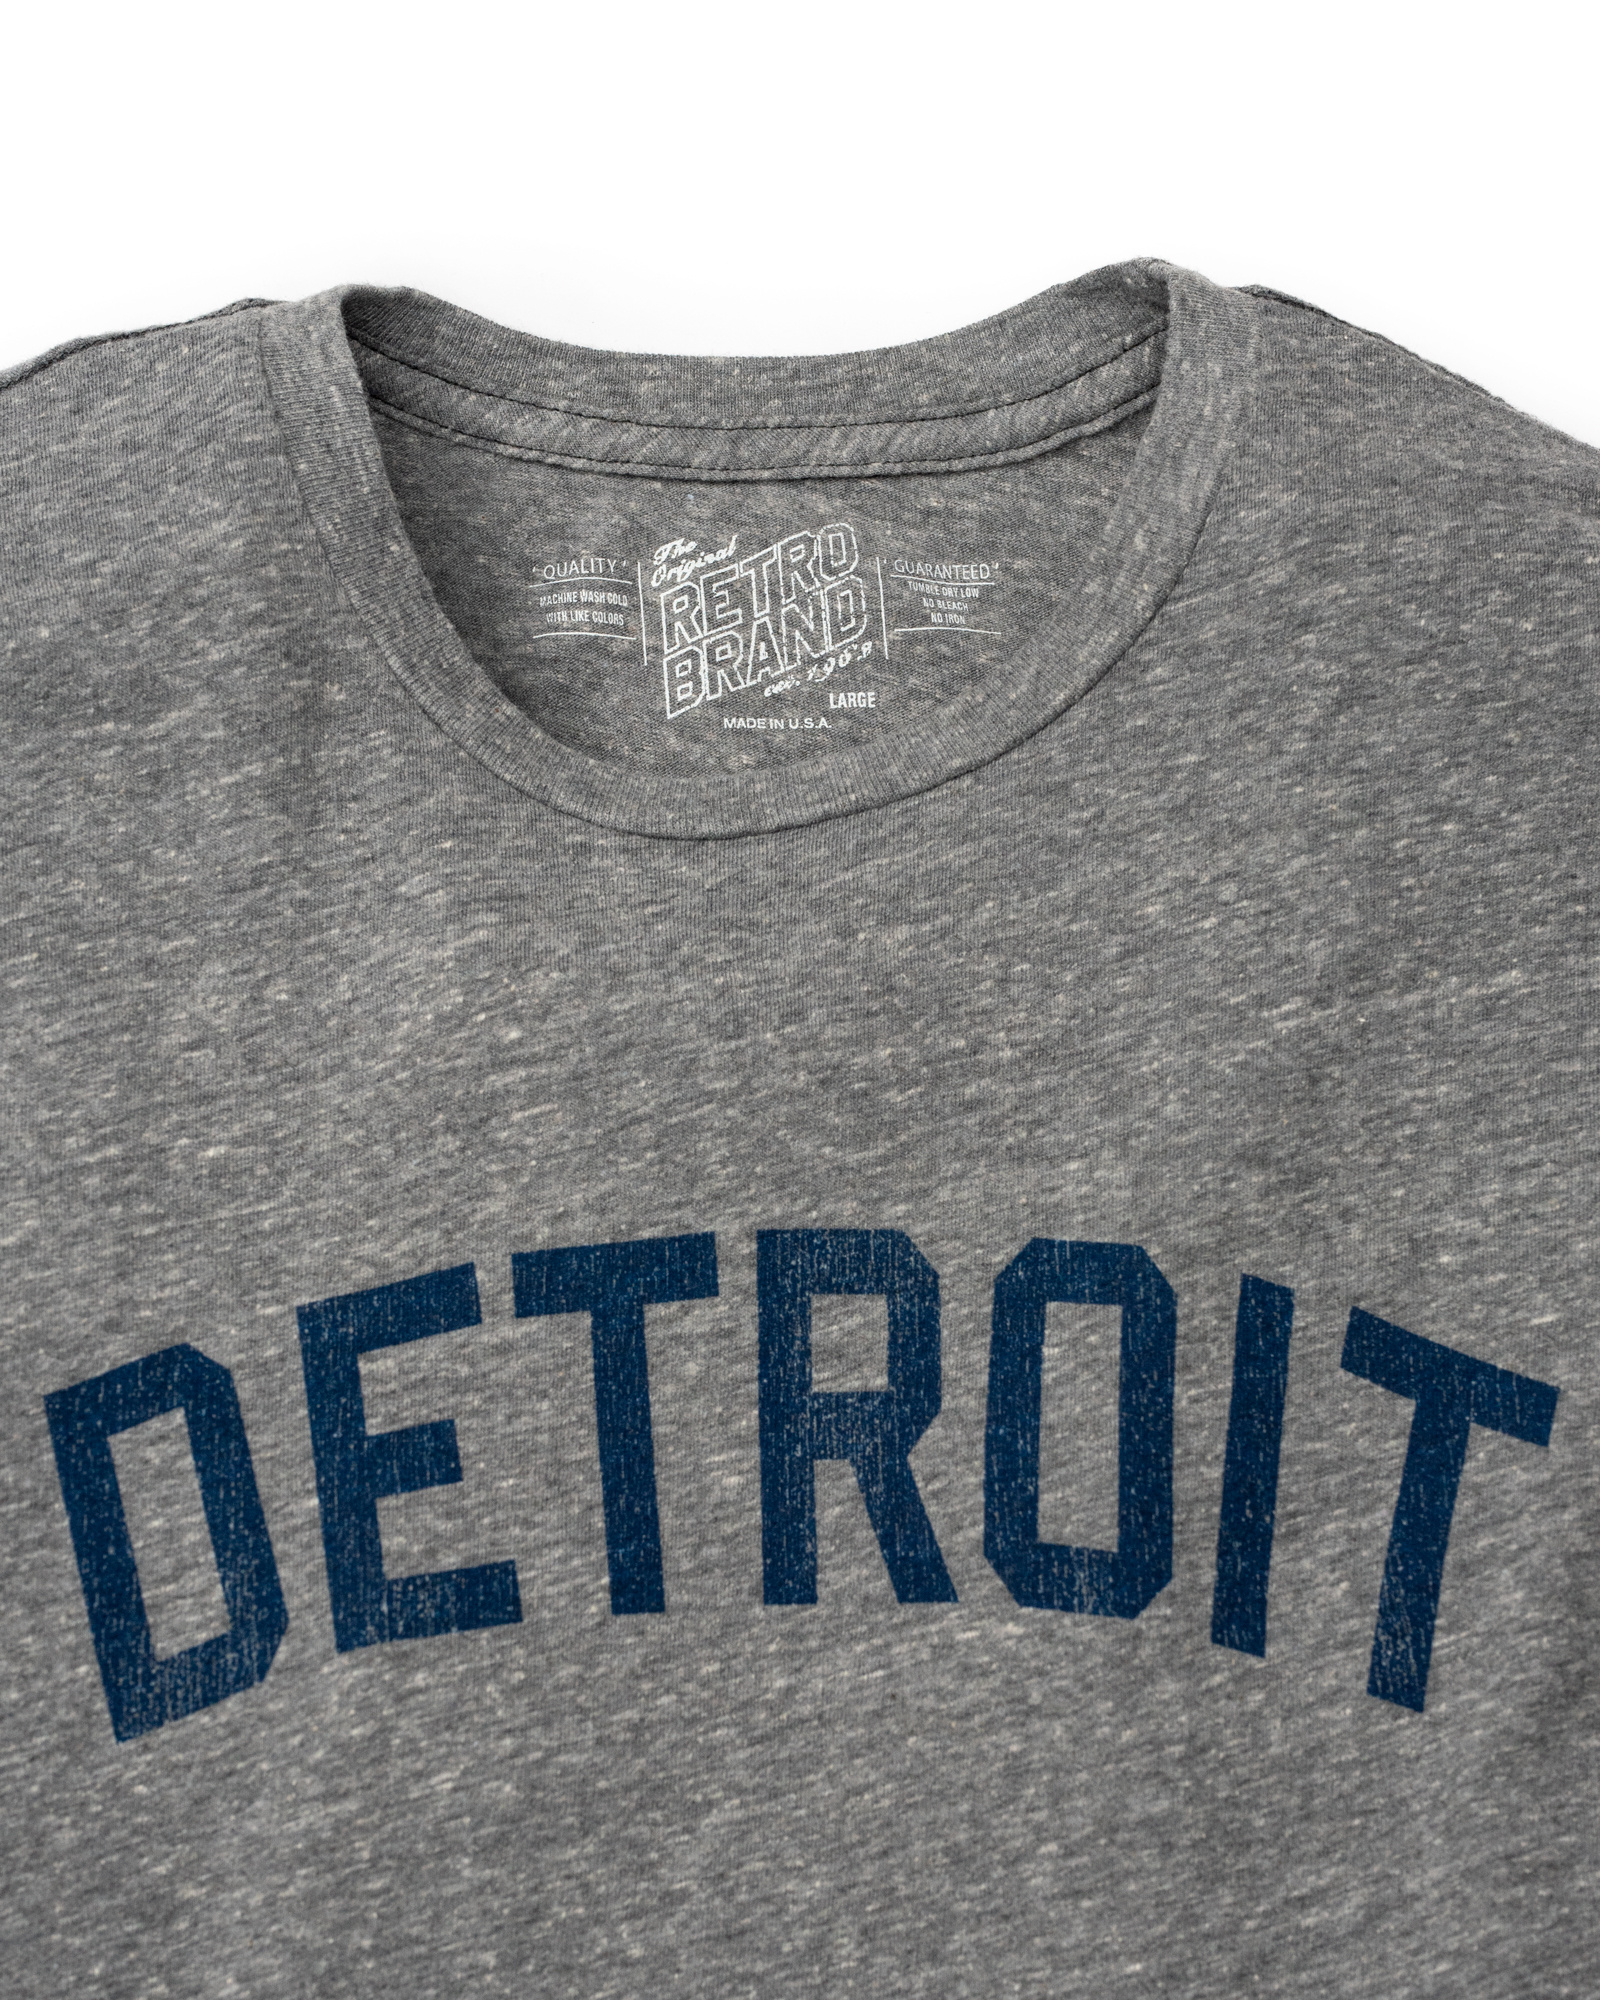 Detroit Tigers Women's T-shirts Archives - Vintage Detroit Collection